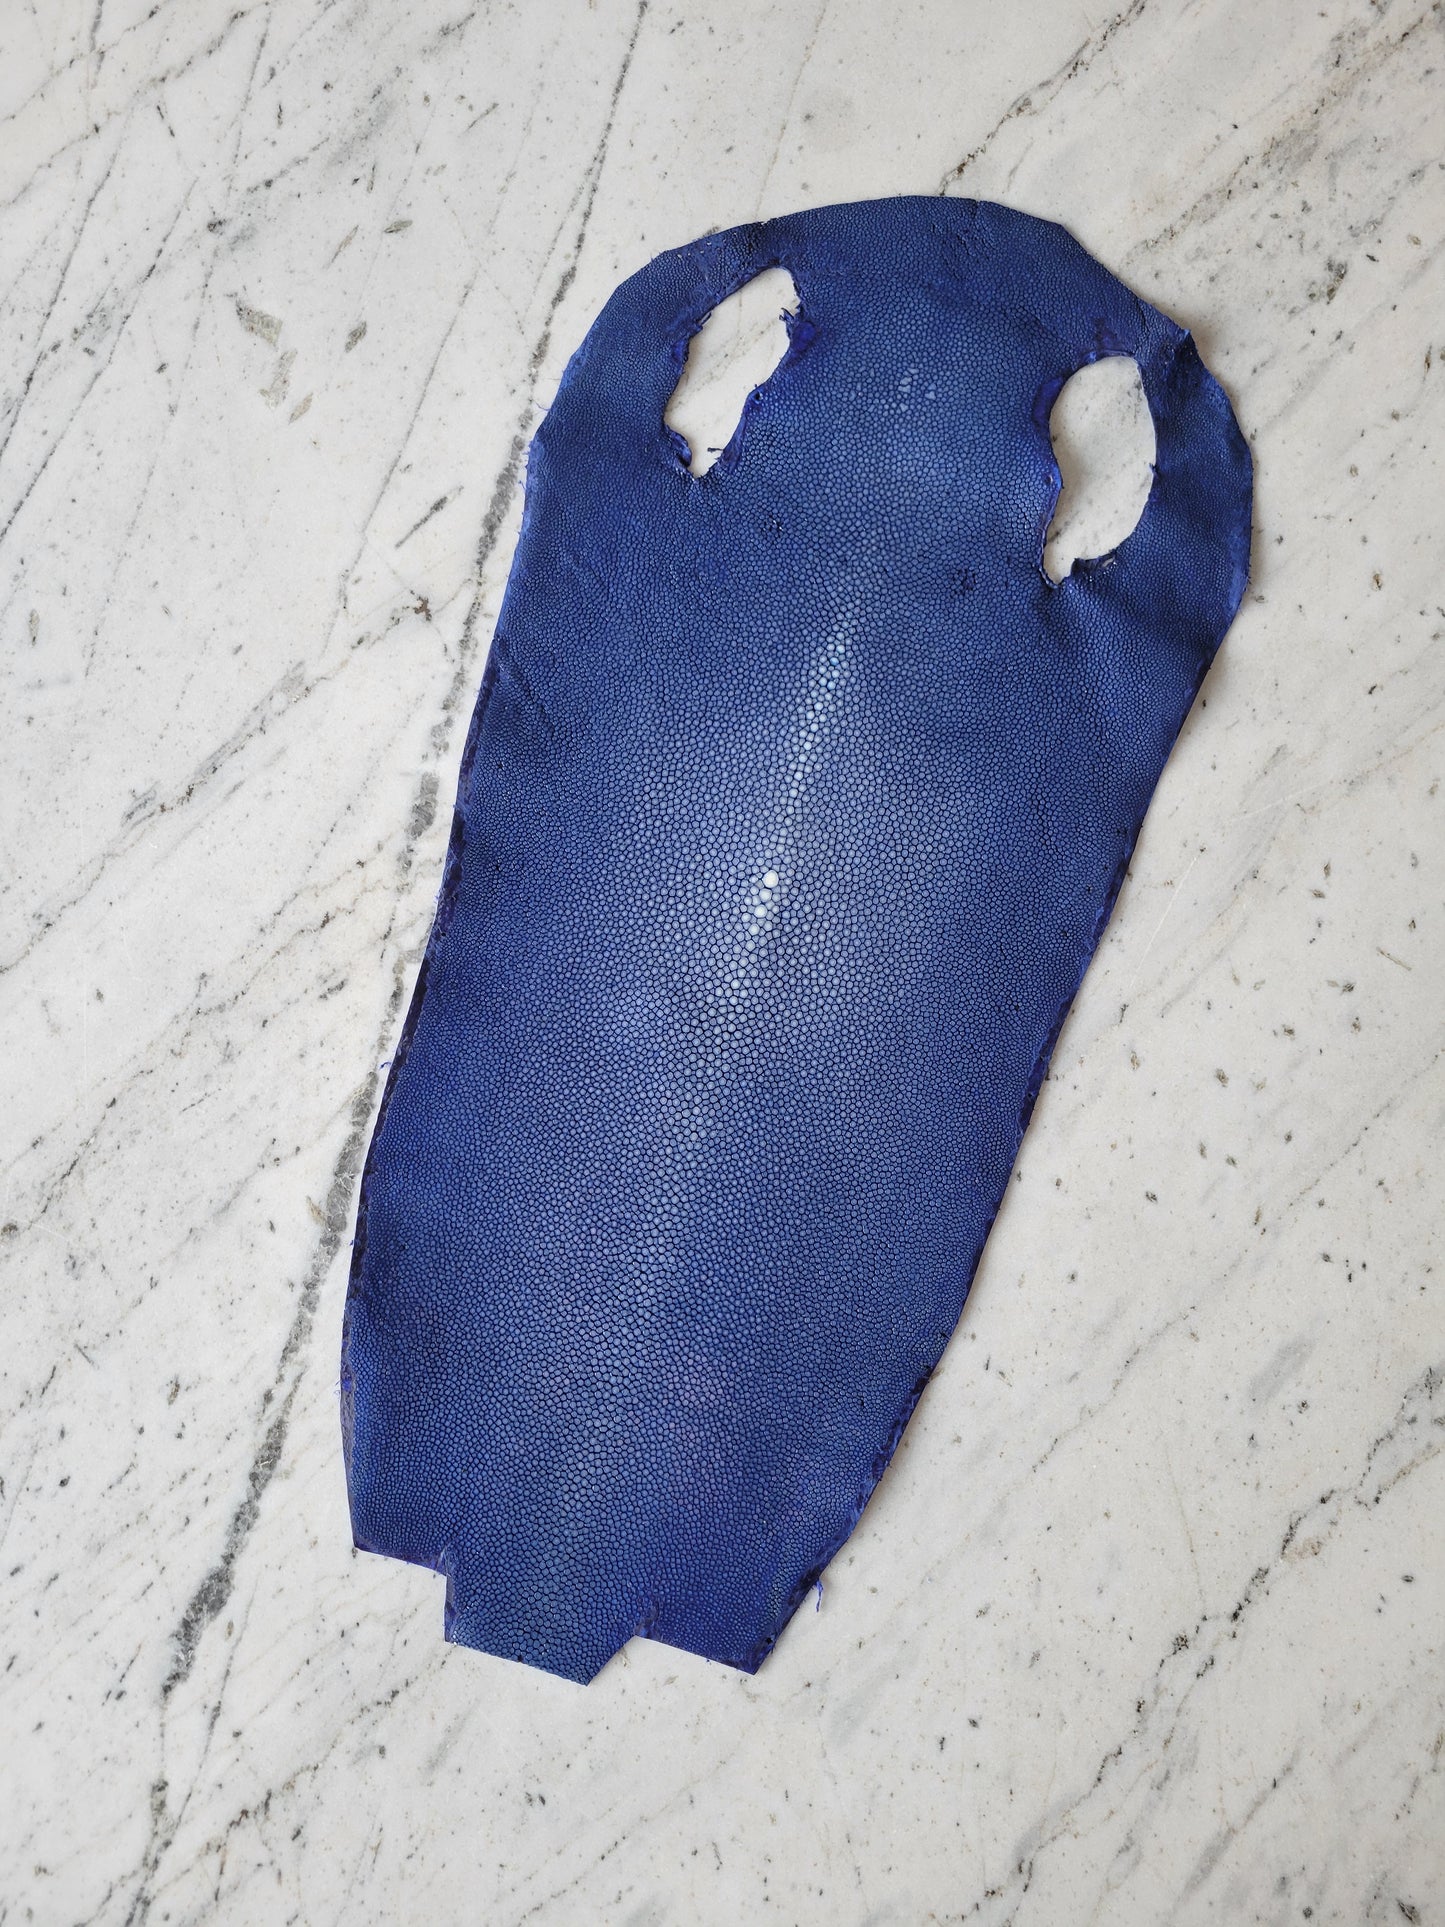 Stingray Leather - Royal Blue Polished